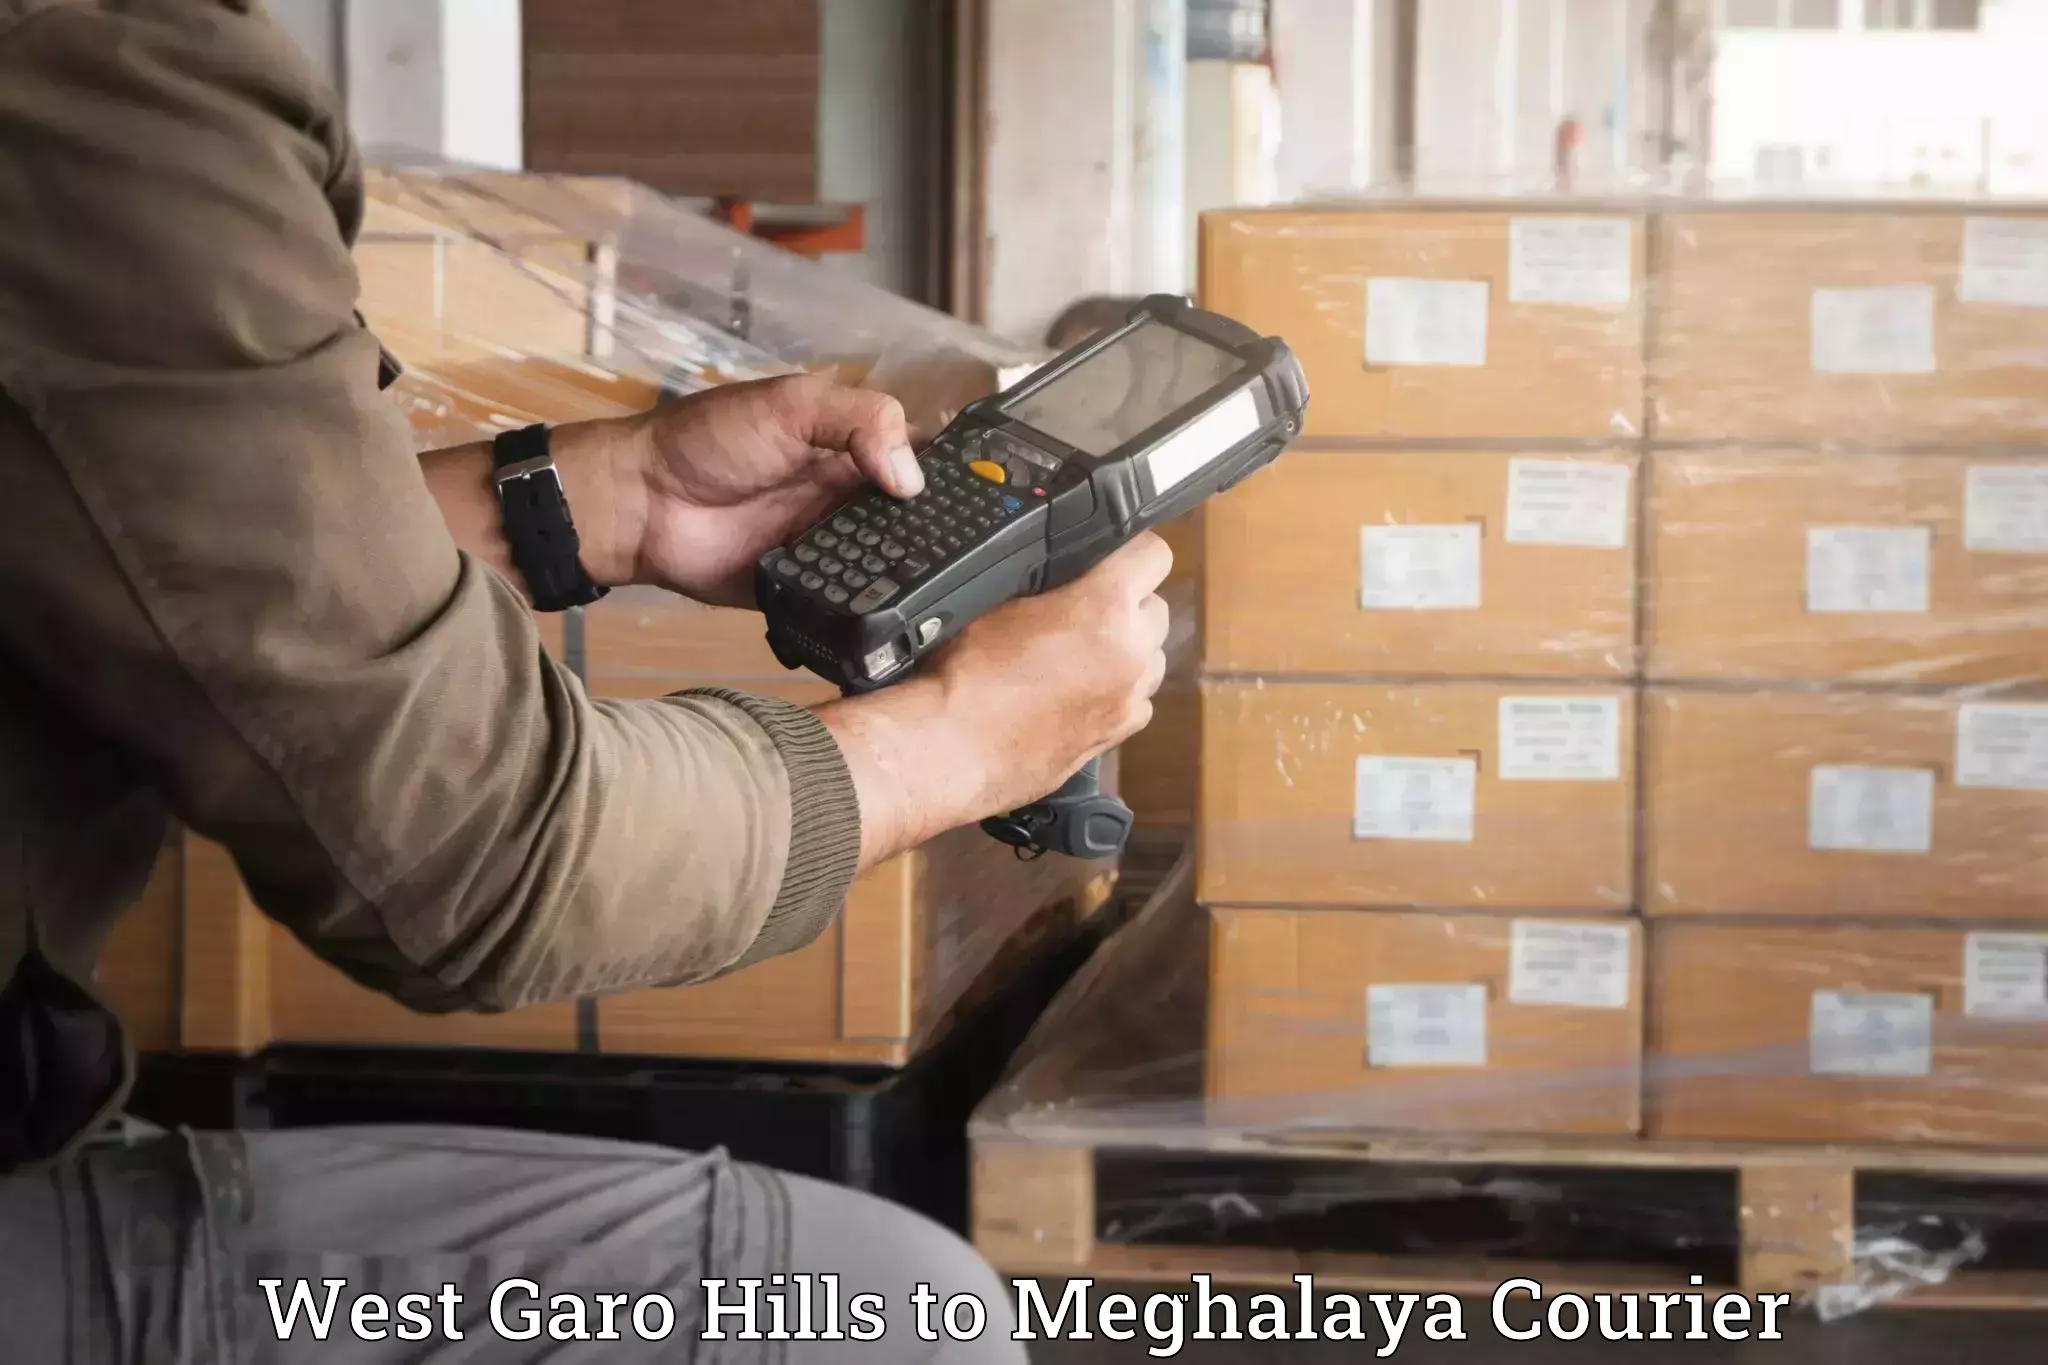 Household goods movers West Garo Hills to East Garo Hills